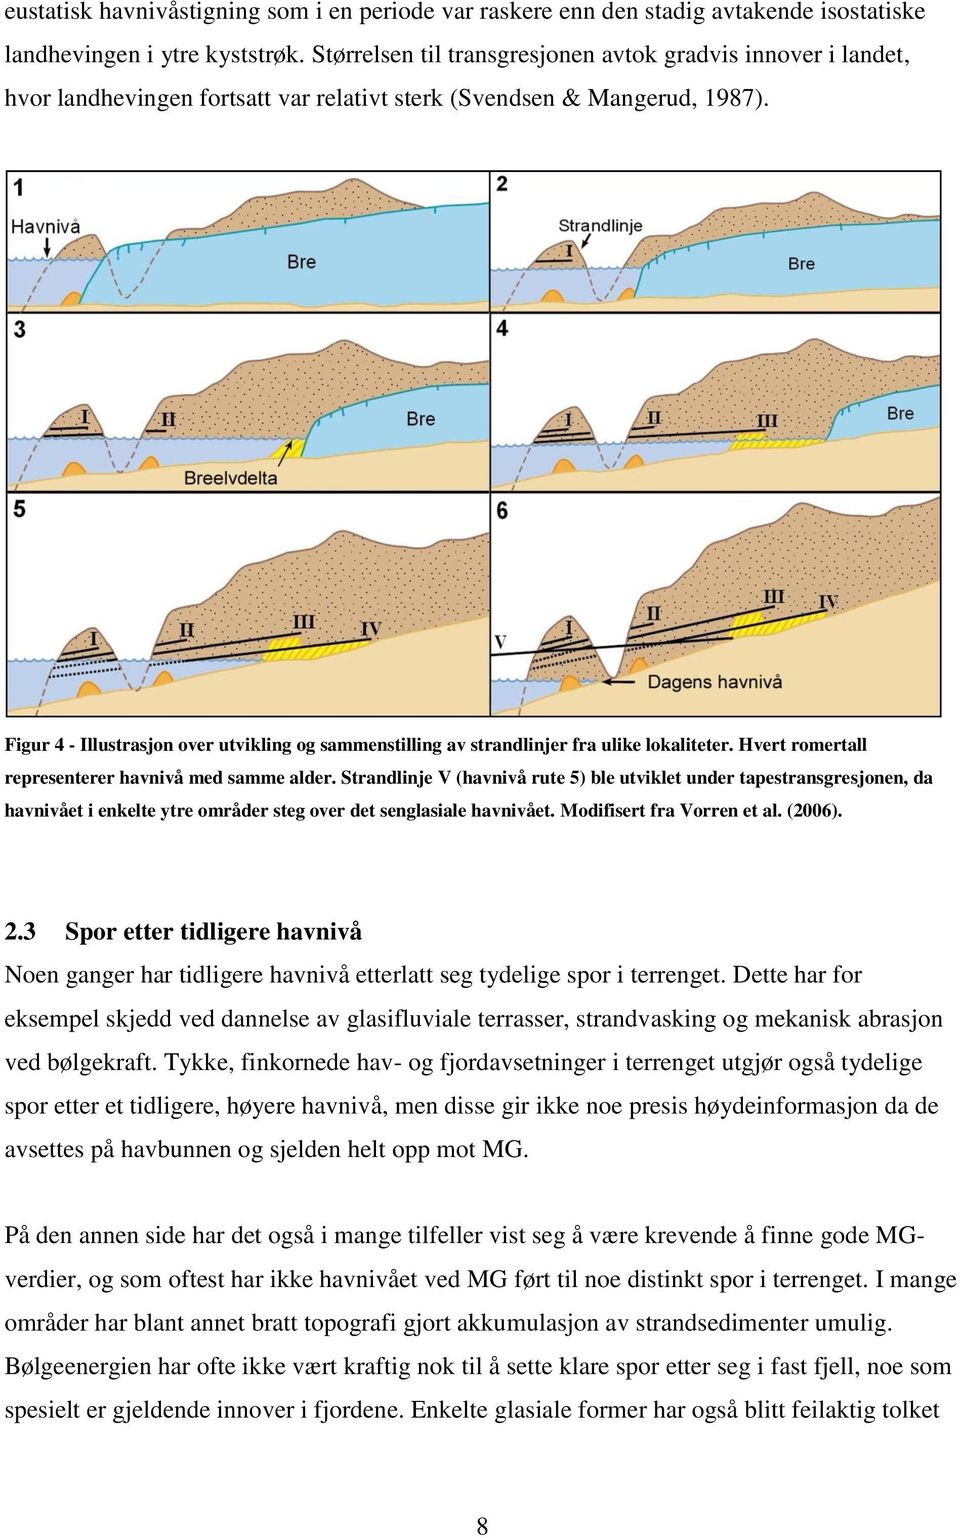 Figur 4 - Illustrasjon over utvikling og sammenstilling av strandlinjer fra ulike lokaliteter. Hvert romertall representerer havnivå med samme alder.